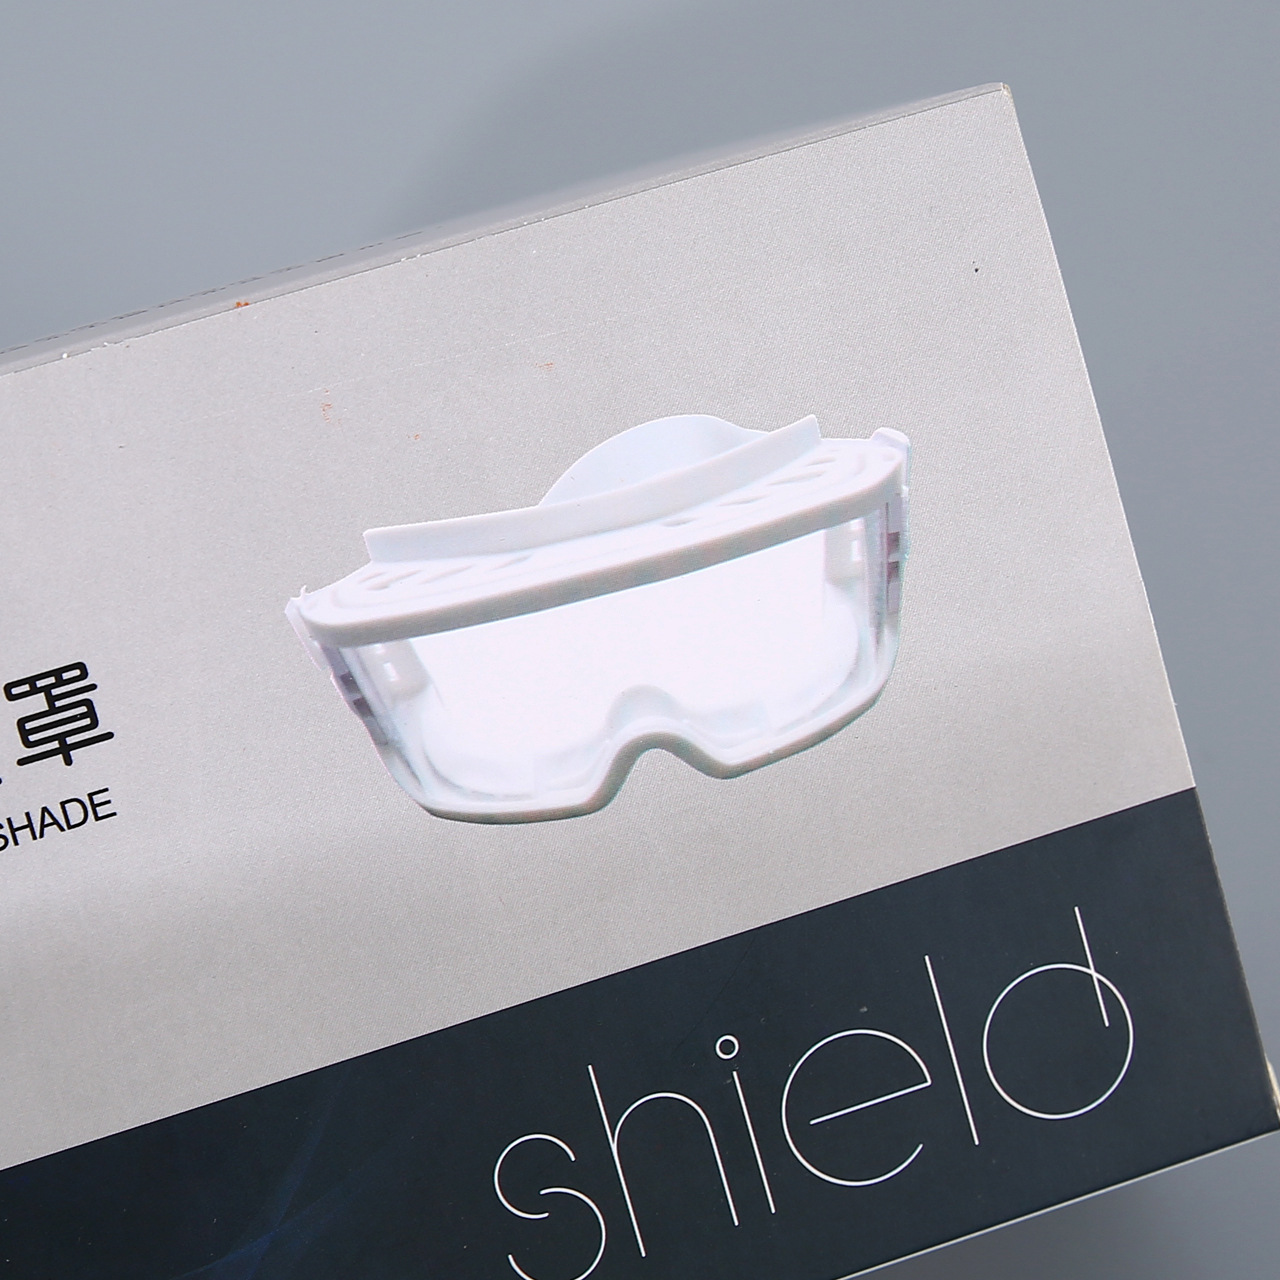 防护眼罩白卡纸包装盒厂家印刷定制